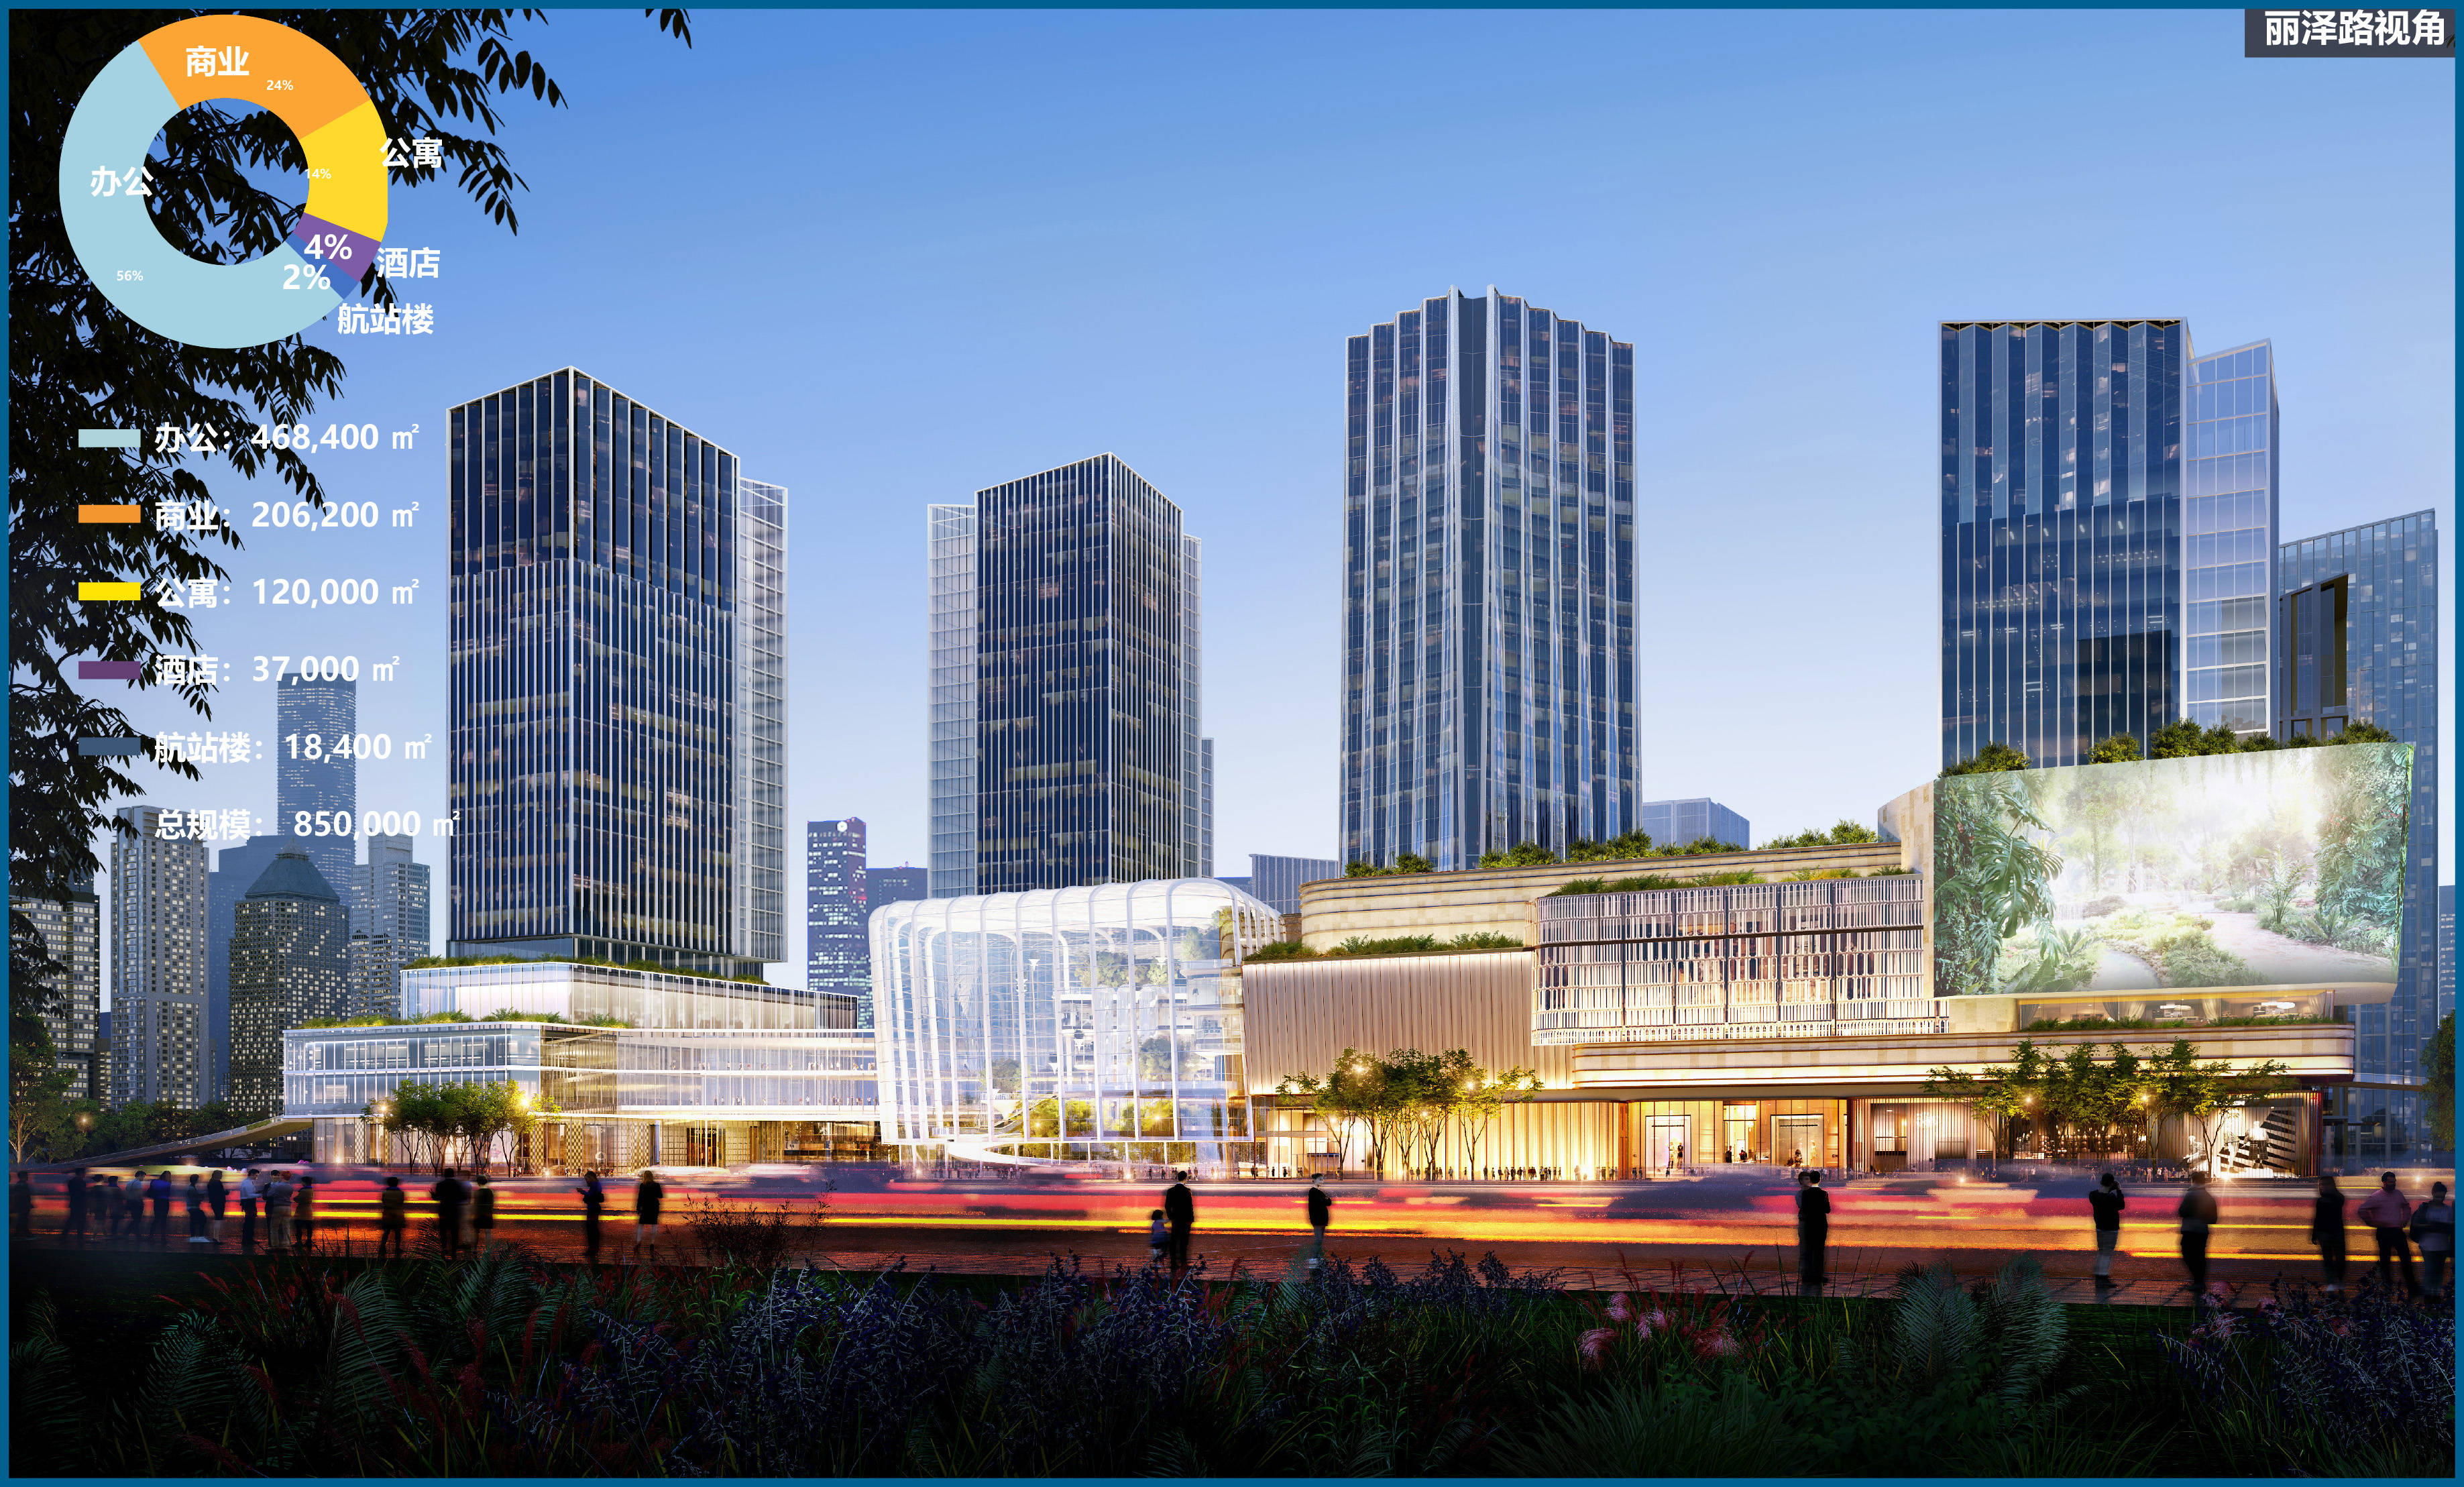 丽泽城市航站楼未来规划首次公布,预计2025年具备运行条件